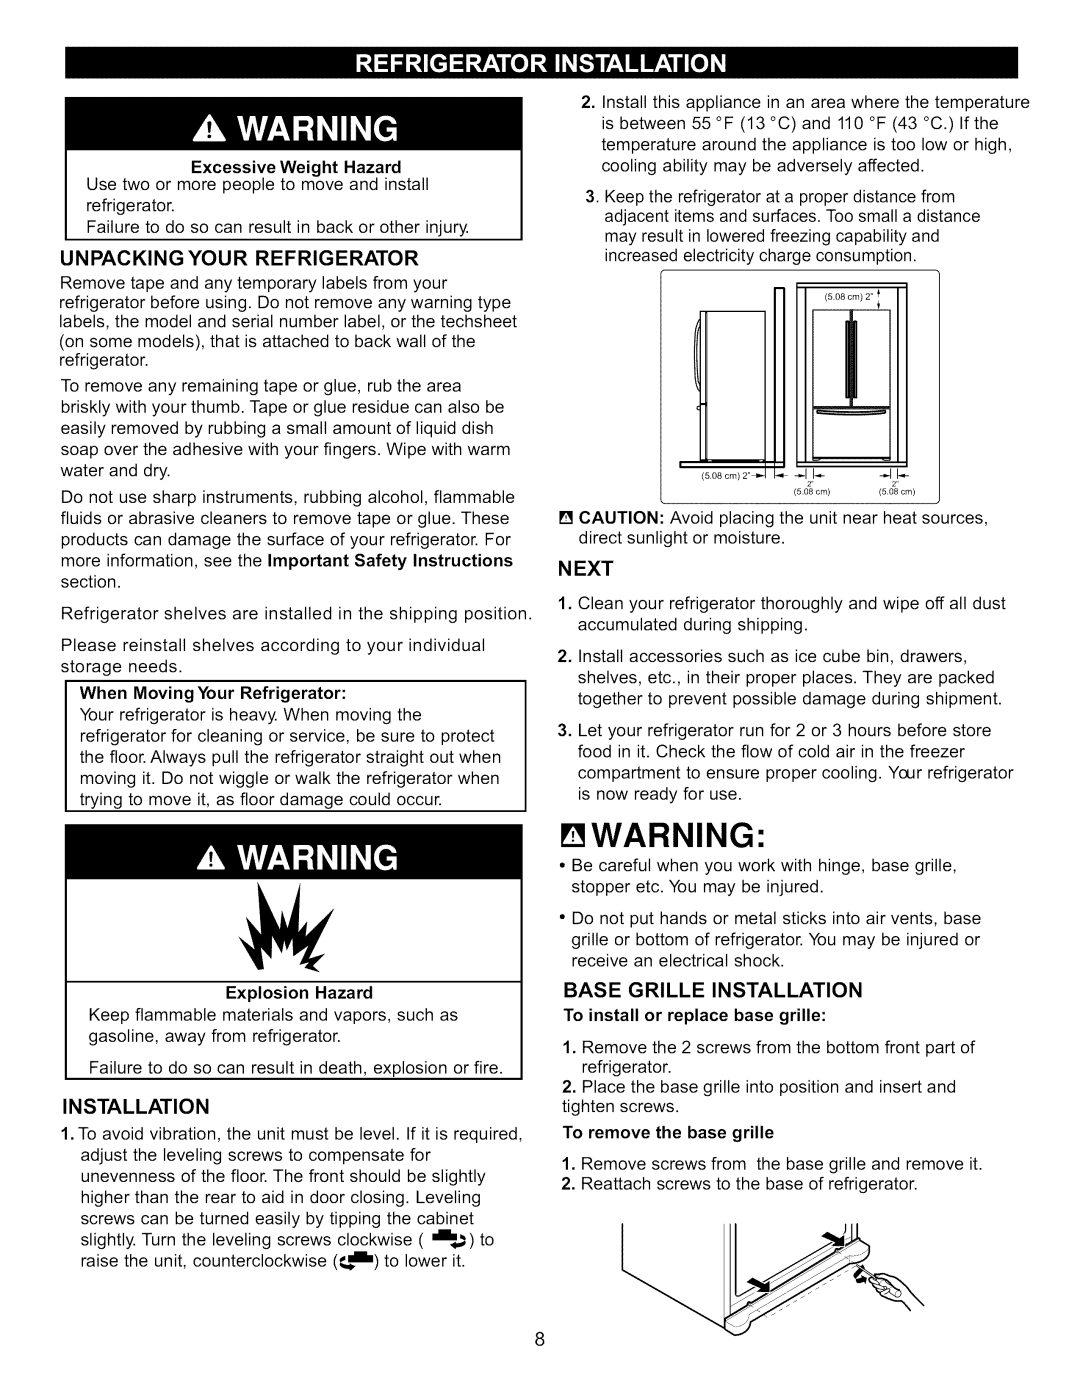 Kenmore 795.7130-K manual Ewarning, Unpacking Your Refrigerator, Next, Base Grille Installation 